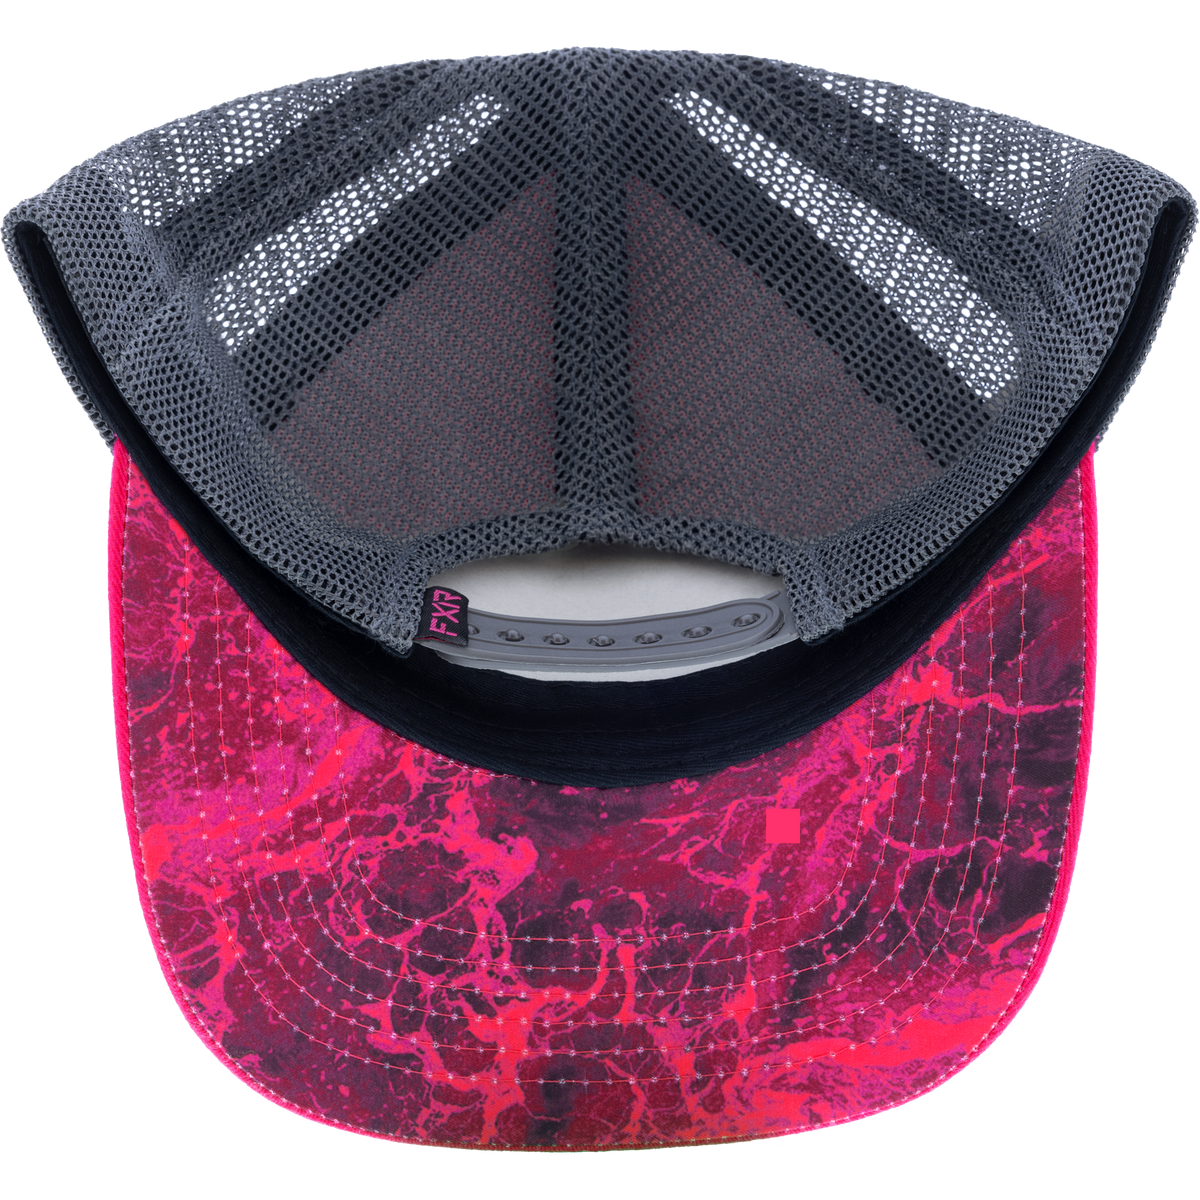 FXR Pro Fish Hat - 2024